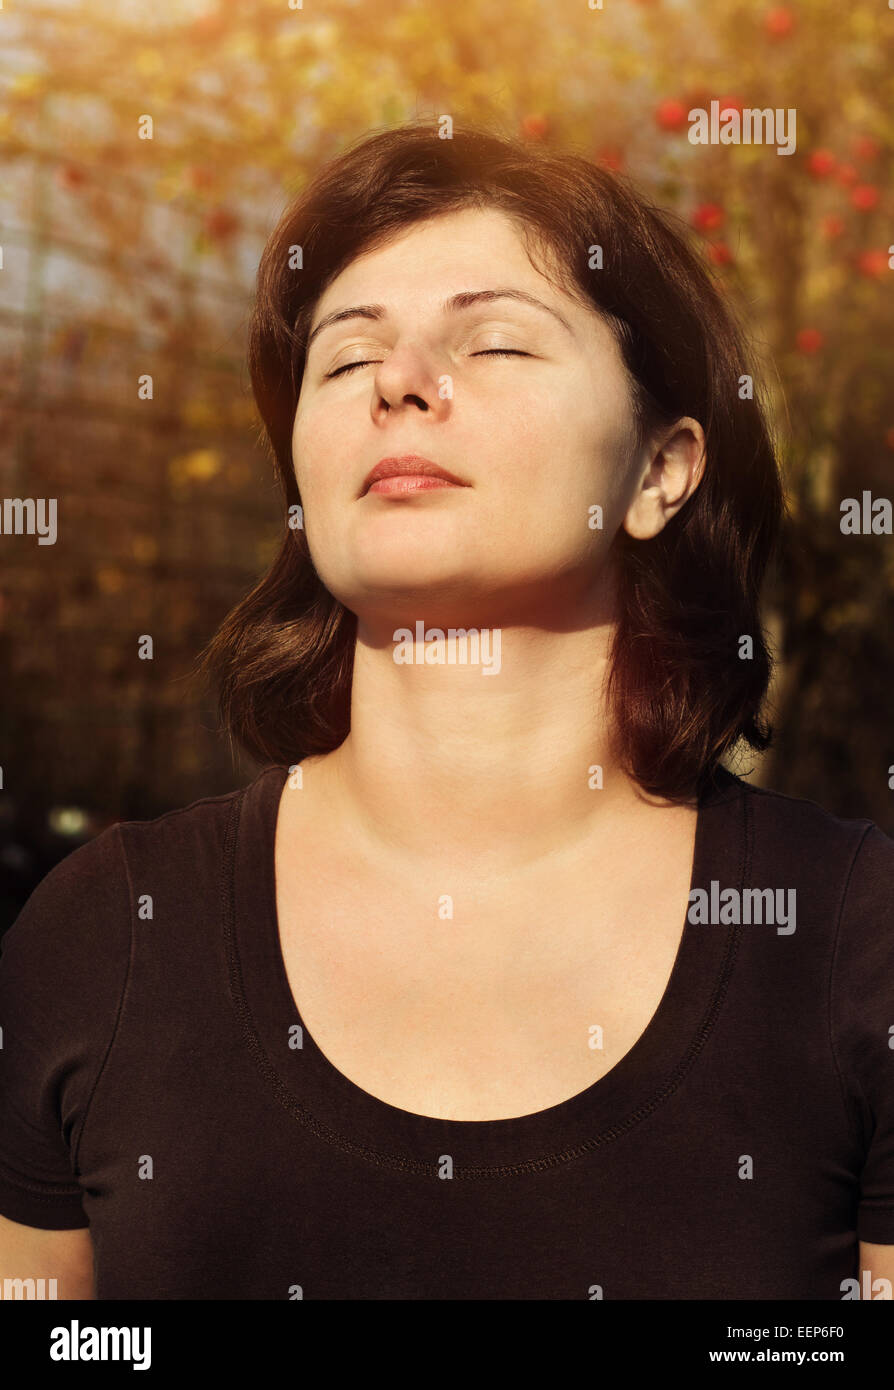 Close up portrait of smiling est belle femme aux yeux clos au cours de la lumière du soleil, la méditation outdoor Banque D'Images